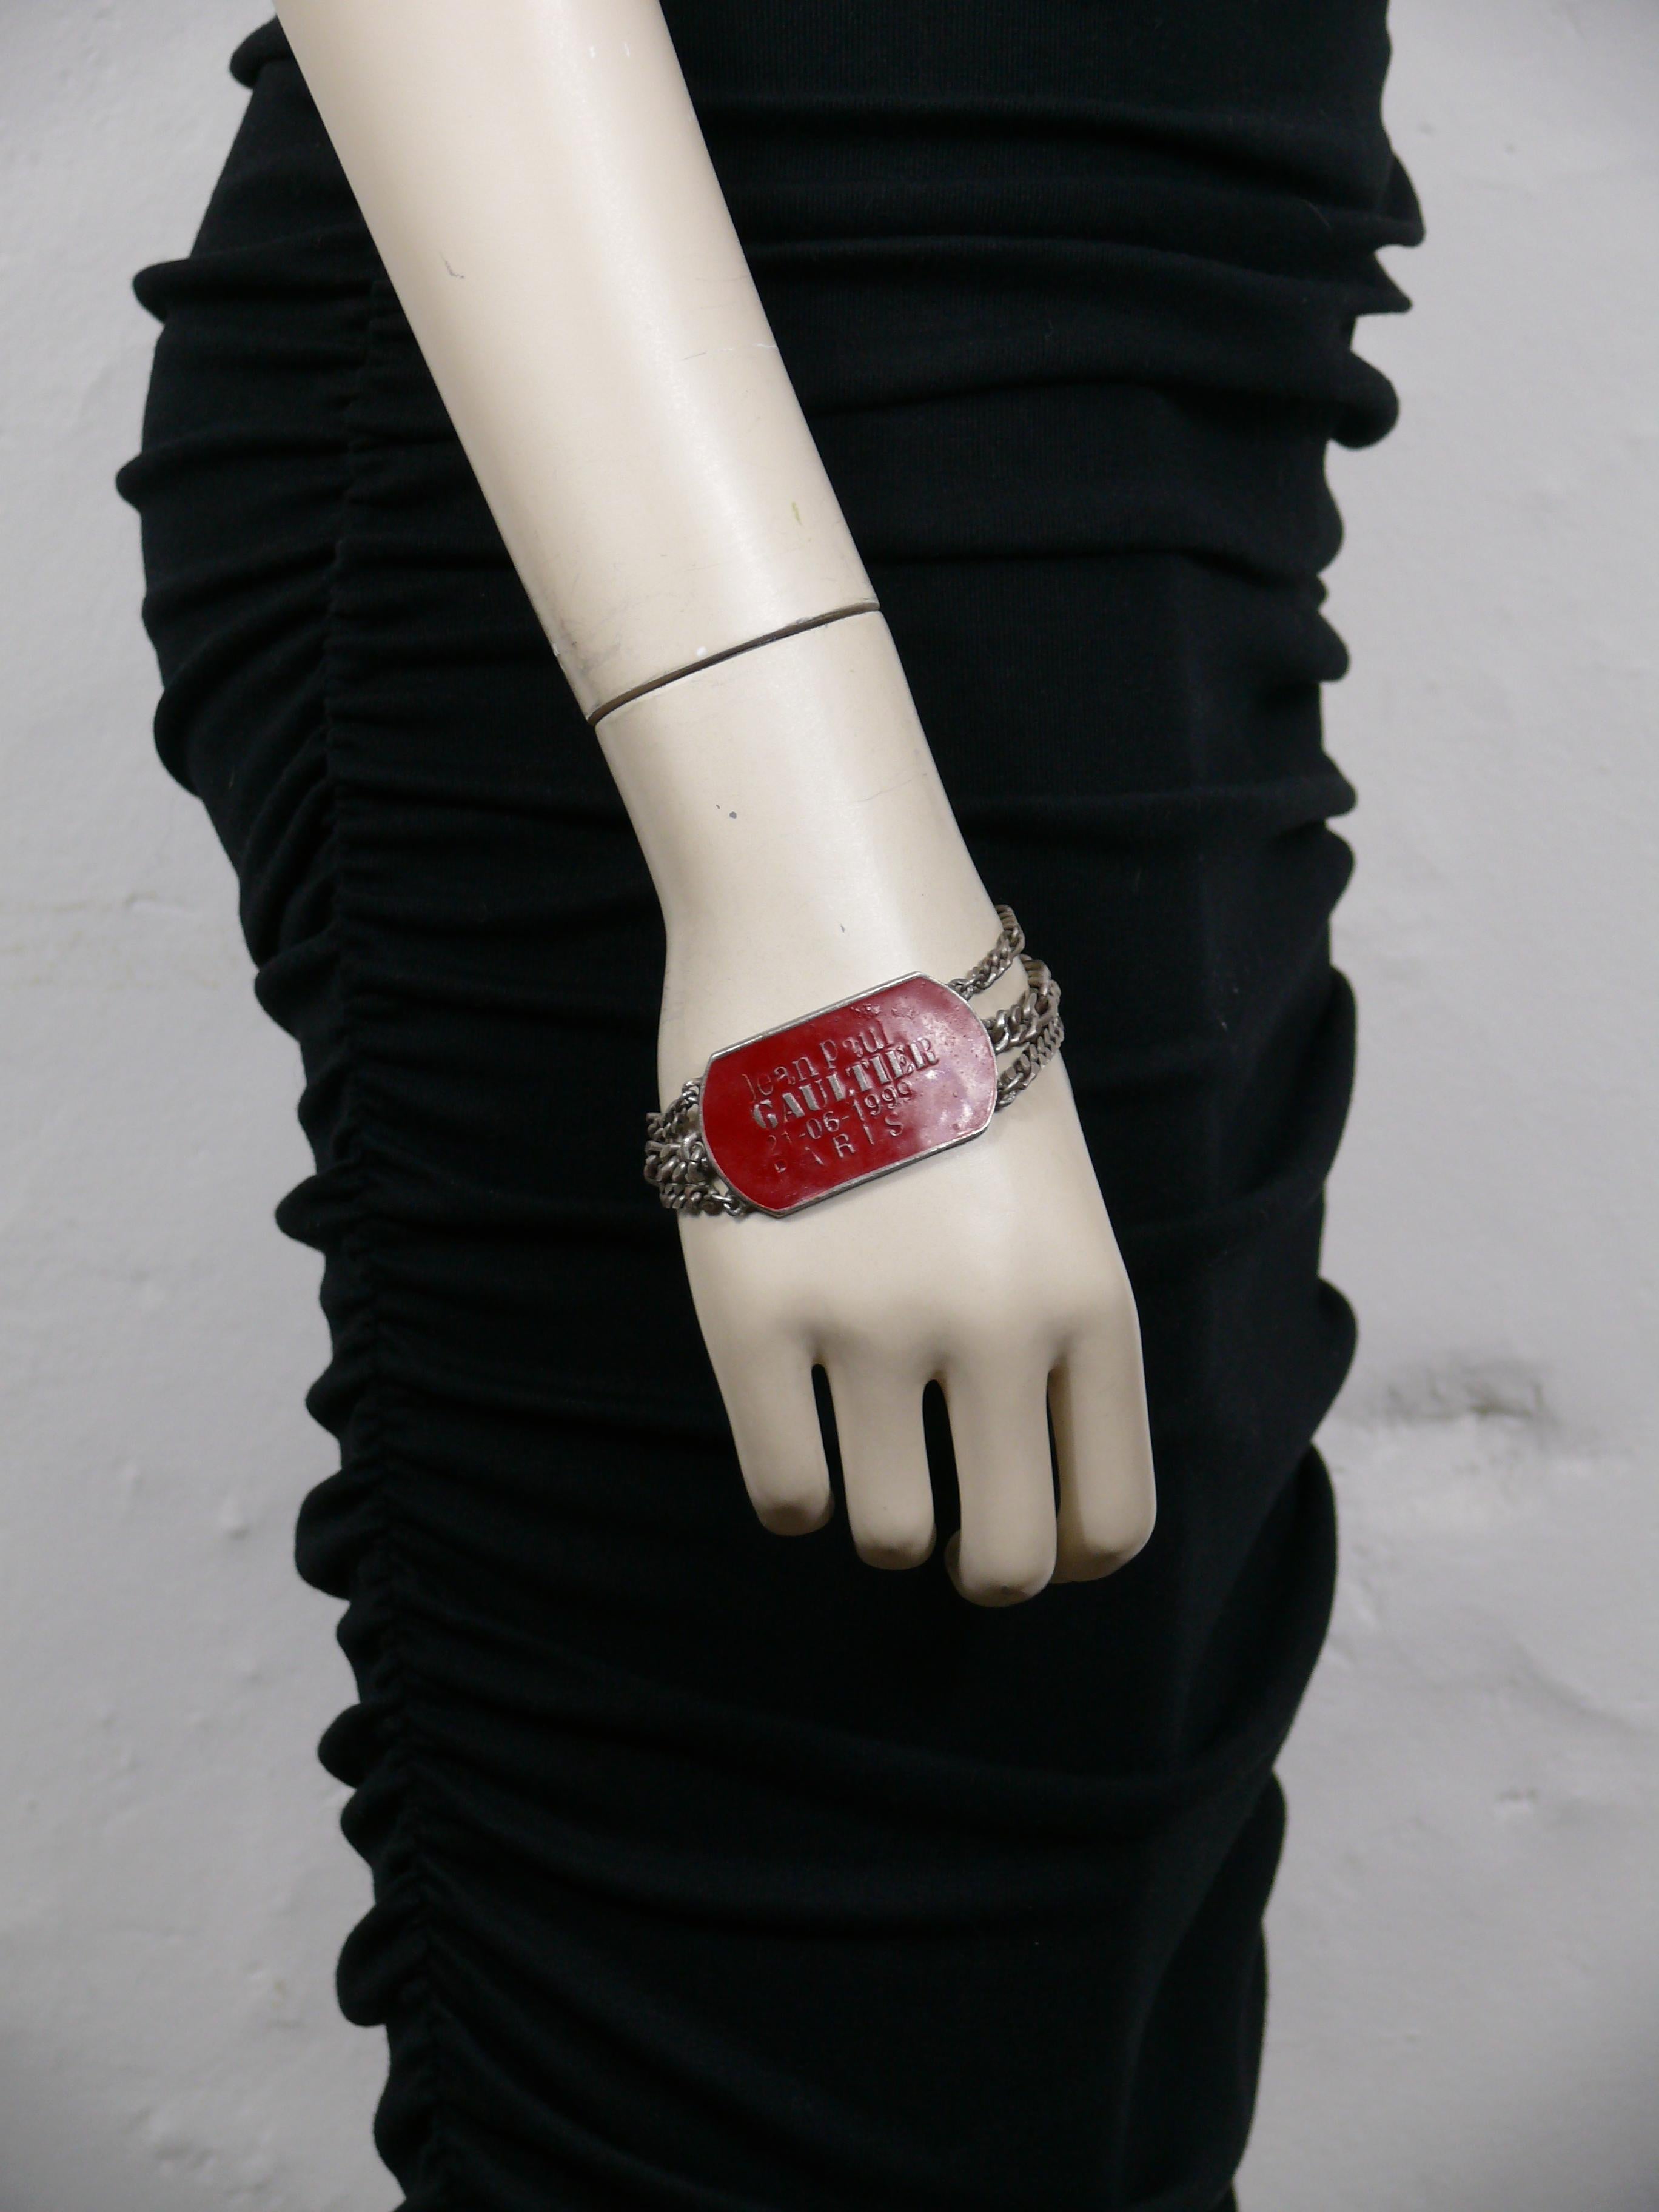 JEAN PAUL GAULTIER Vintage-Armband aus silberfarbenem Metall mit mehreren Ketten und einem militärisch inspirierten ID-Tag mit roter Emaille und der Prägung JEAN PAUL GAULTIER 21-06-1999 PARIS.

Faltbarer Verschluss.

Unmarkiert.

Ungefähre Maße: